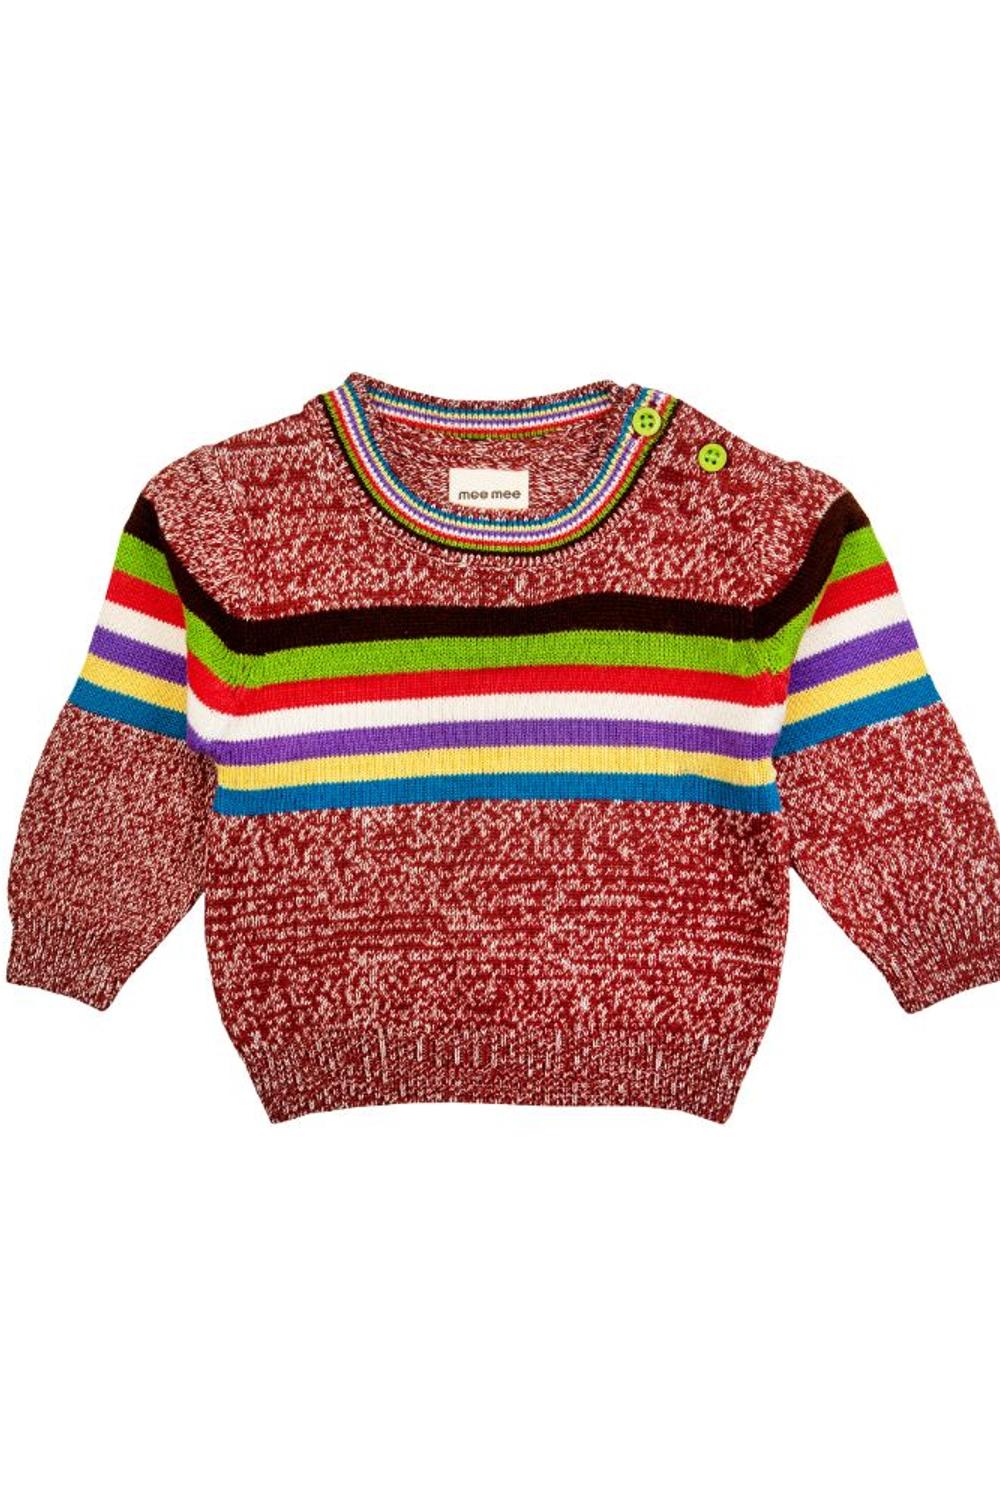 Mee Mee Boys Full sleeve Sweater - Red Melange